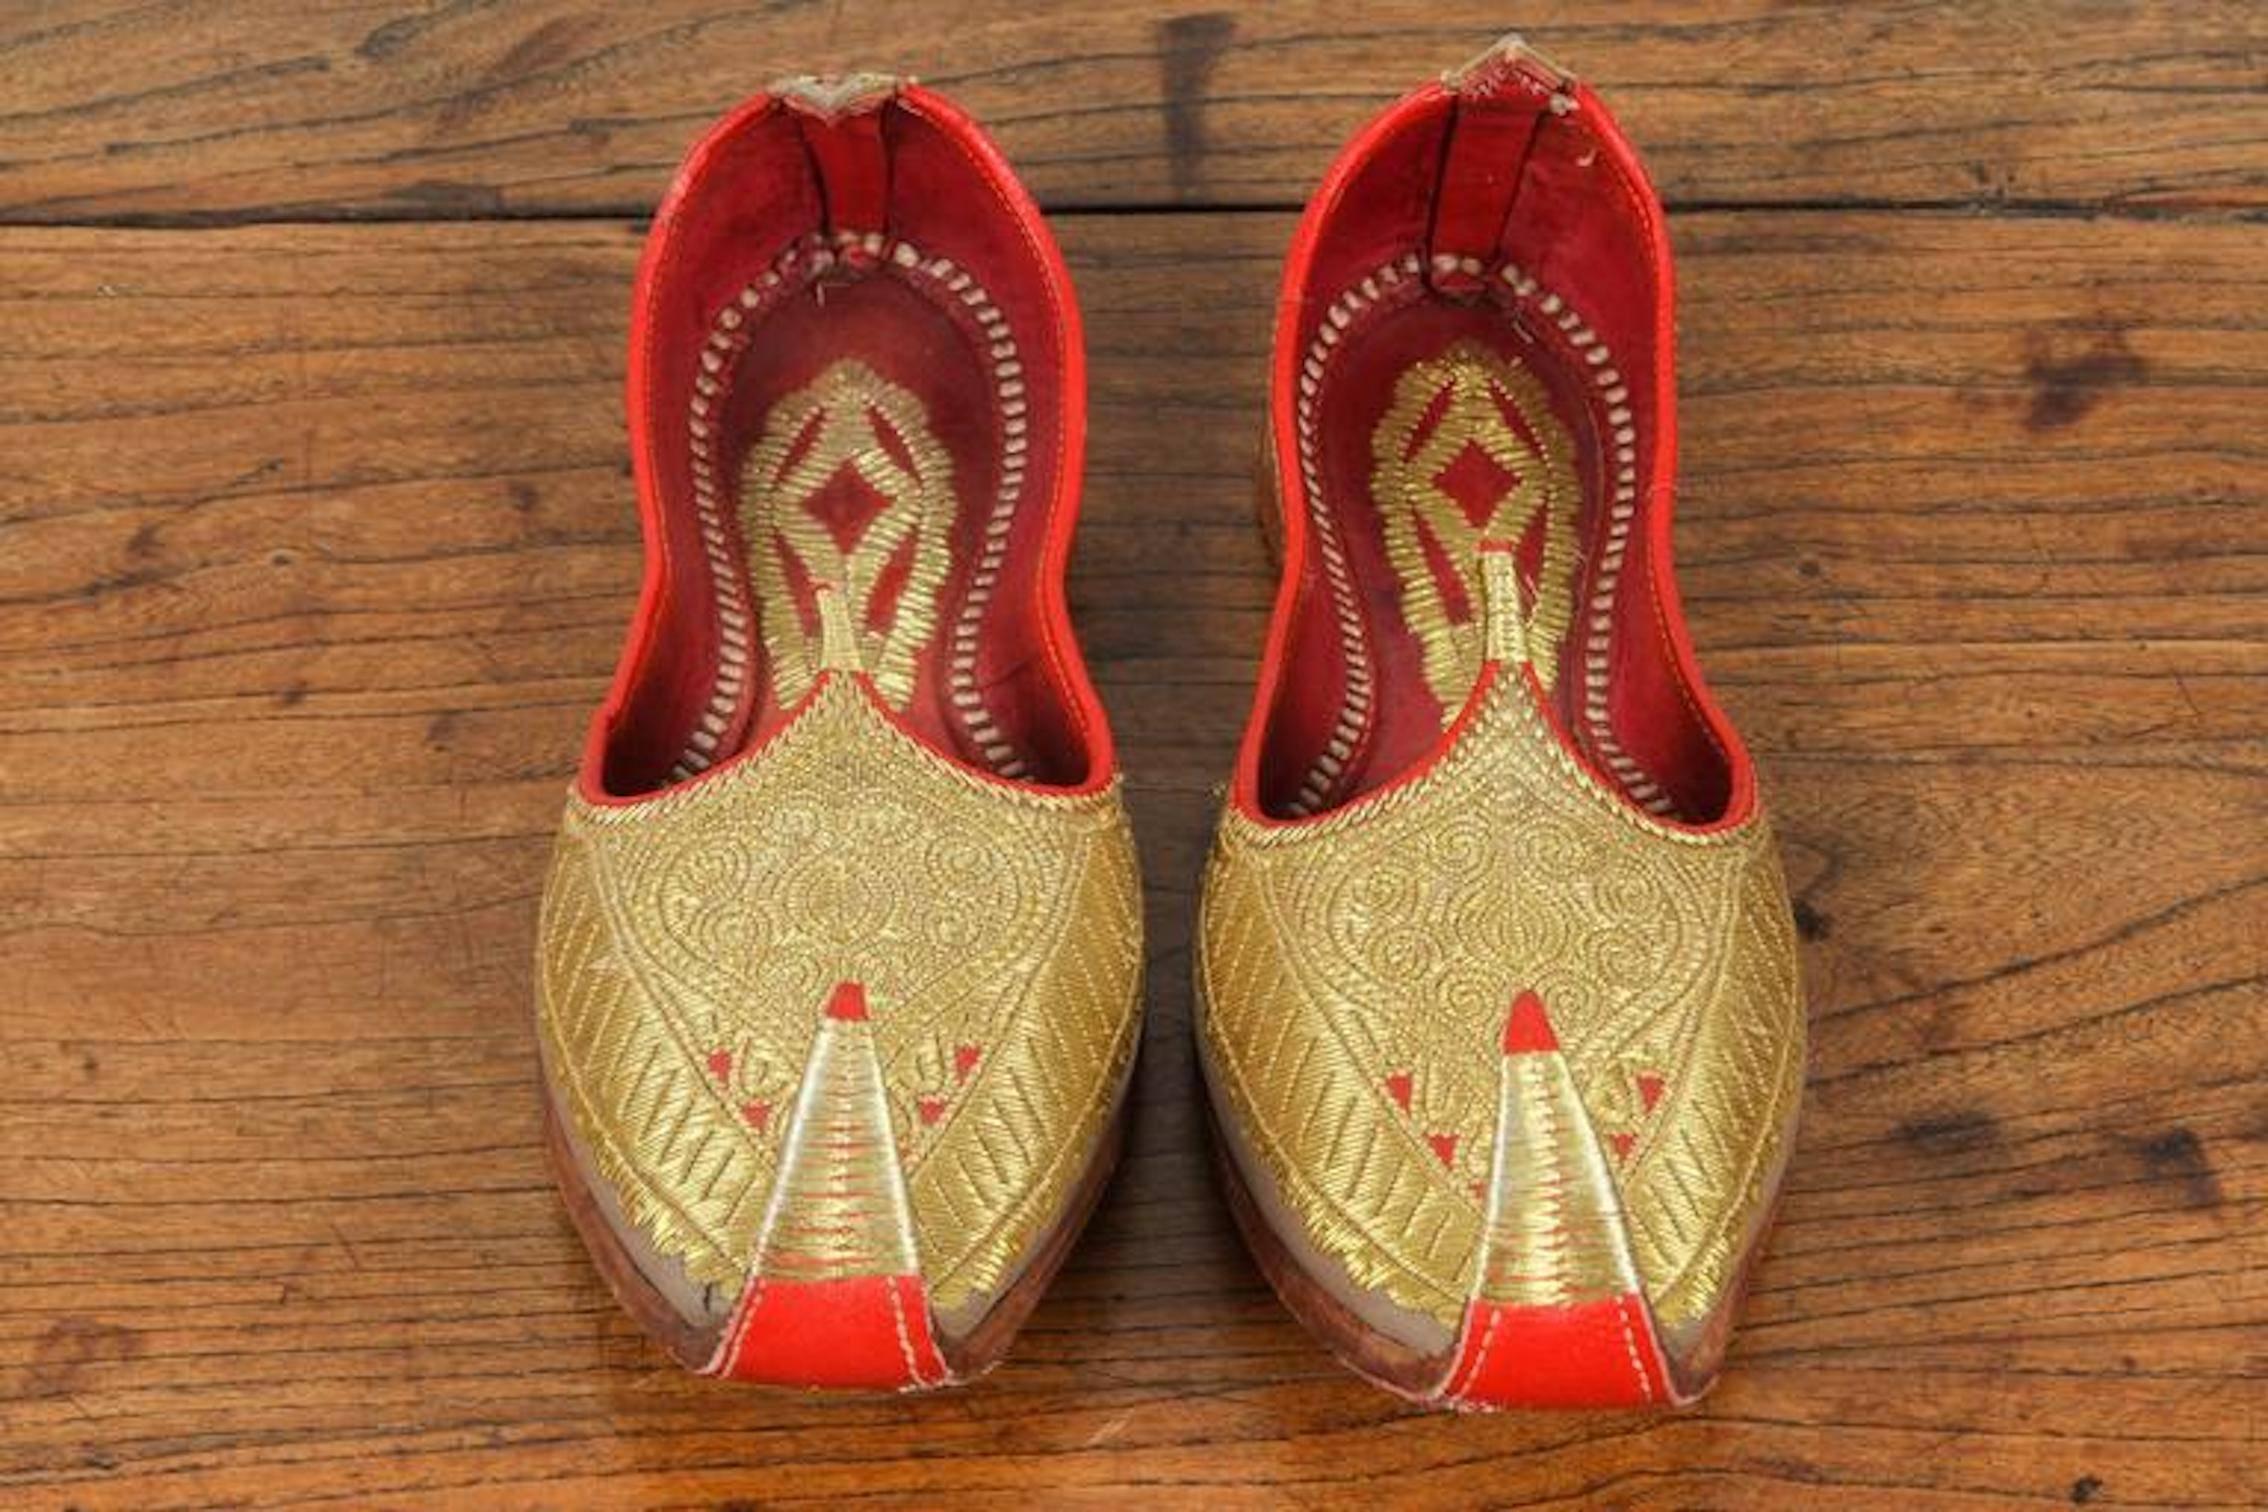 Étonnantes chaussures brodées en cuir rouge et or de style mauresque du Moyen-Orient. 
Pantoufles de mariage de cérémonie en cuir royal, brodées de fils d'or.
Aladdin, Ali Baba Génie arabe Style ottoman Classique orteil recourbé étonnant à utiliser